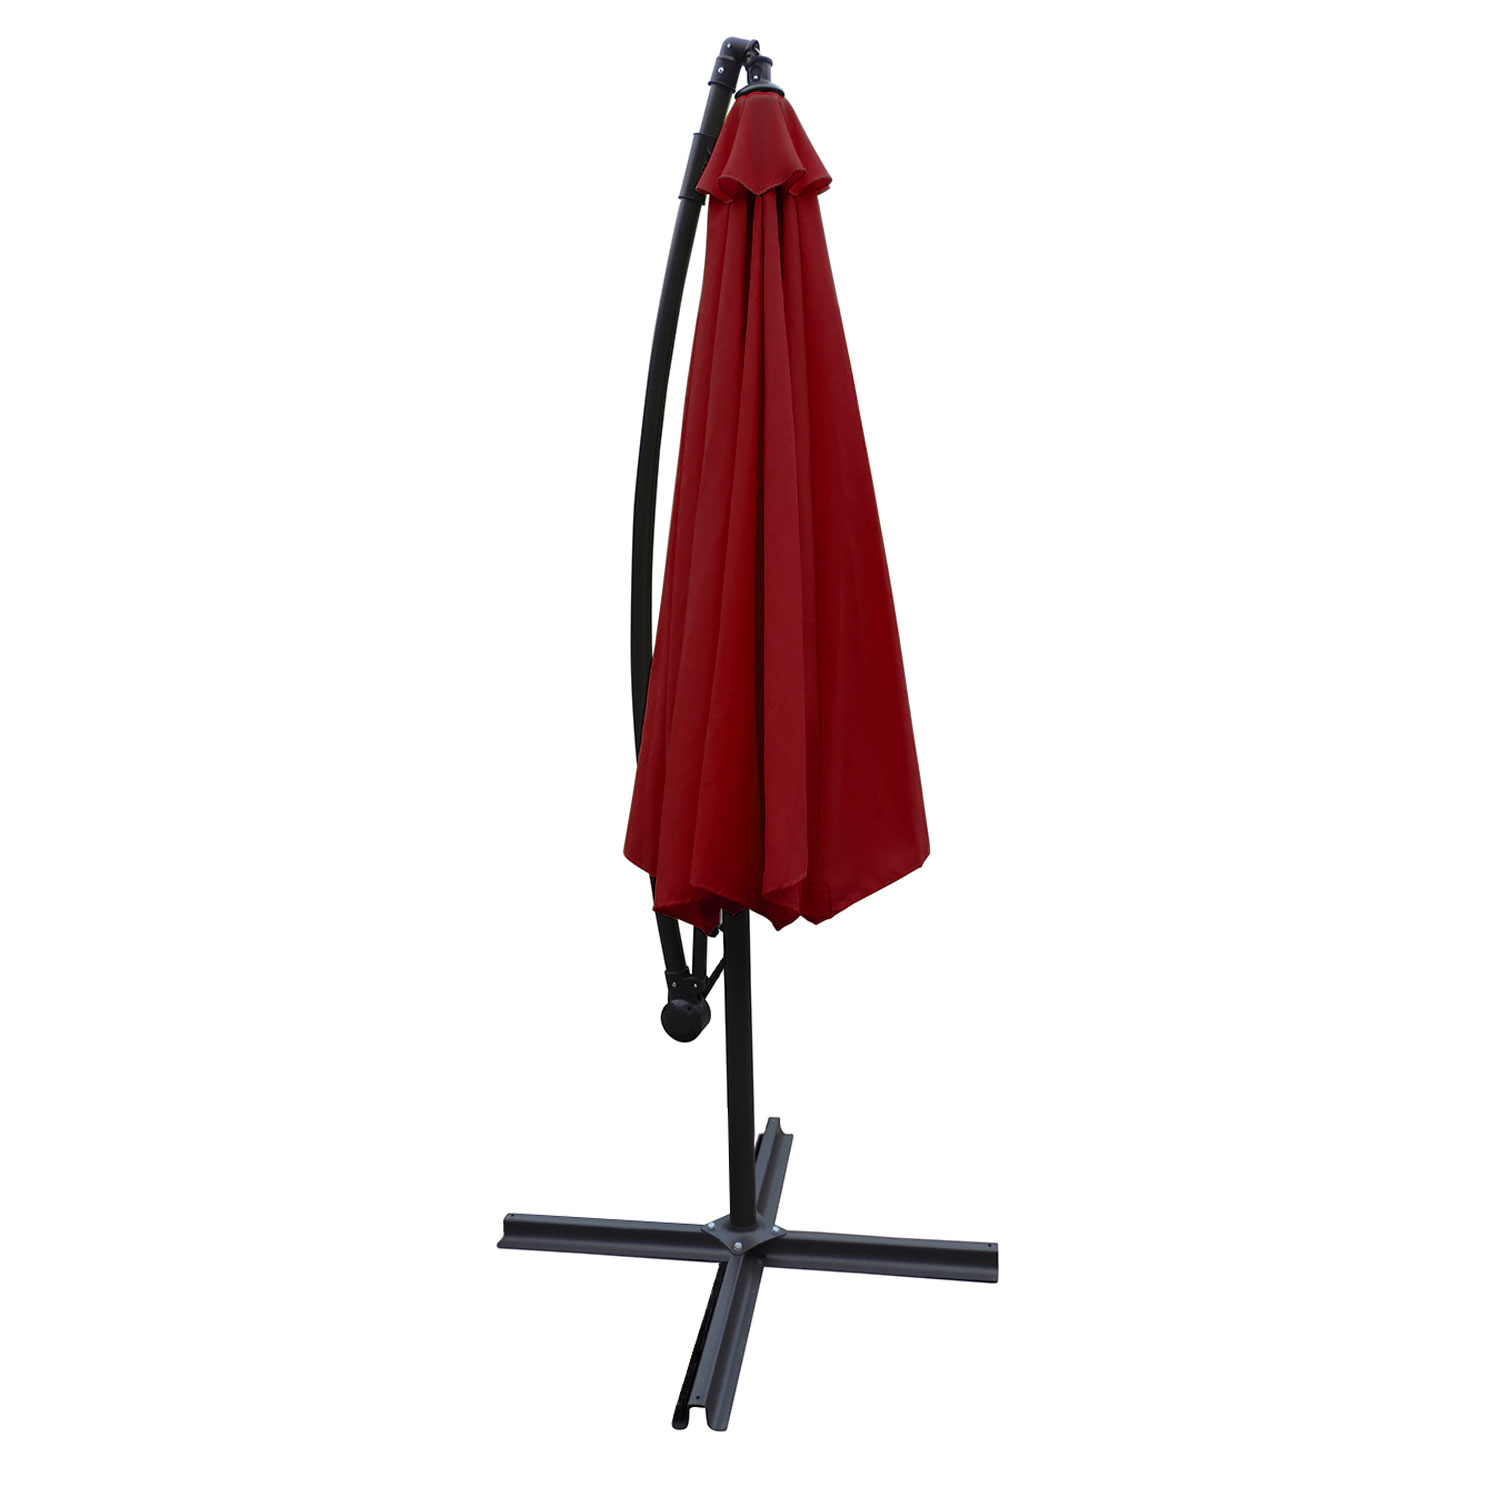 OAHU offset guarda-chuva redondo de 3,50m de diâmetro vermelho